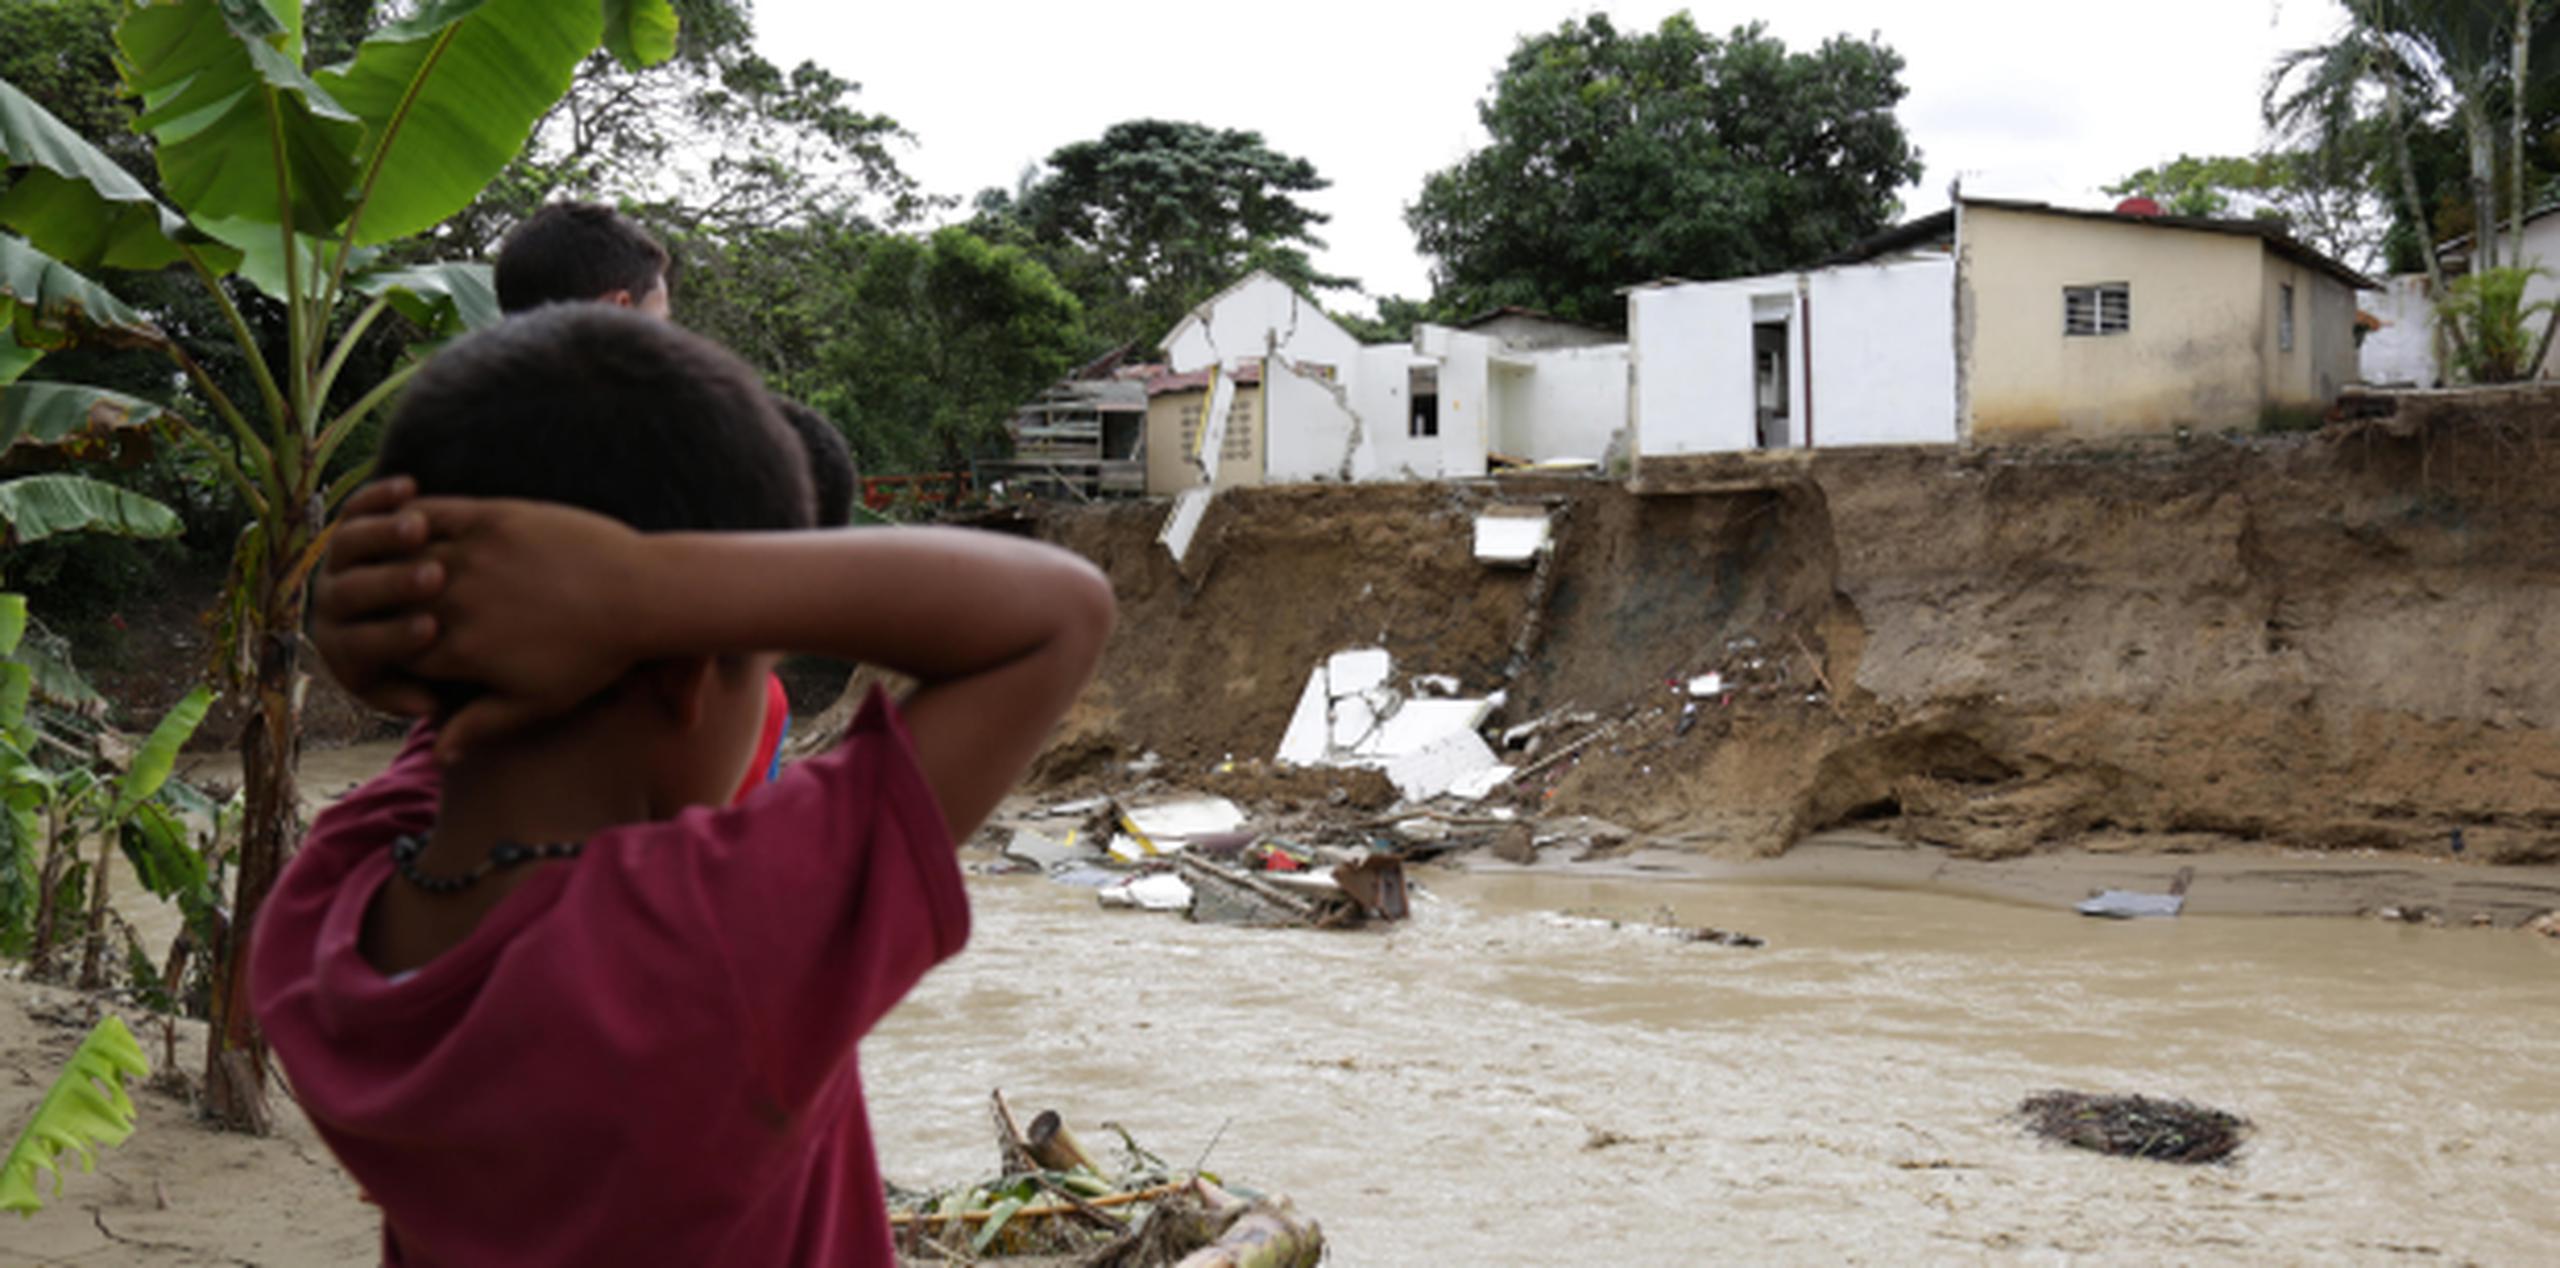 Vista de viviendas destruidas a causa de las fuertes lluvias que han caído sobre la zona norte del país. (Agencia EFE)